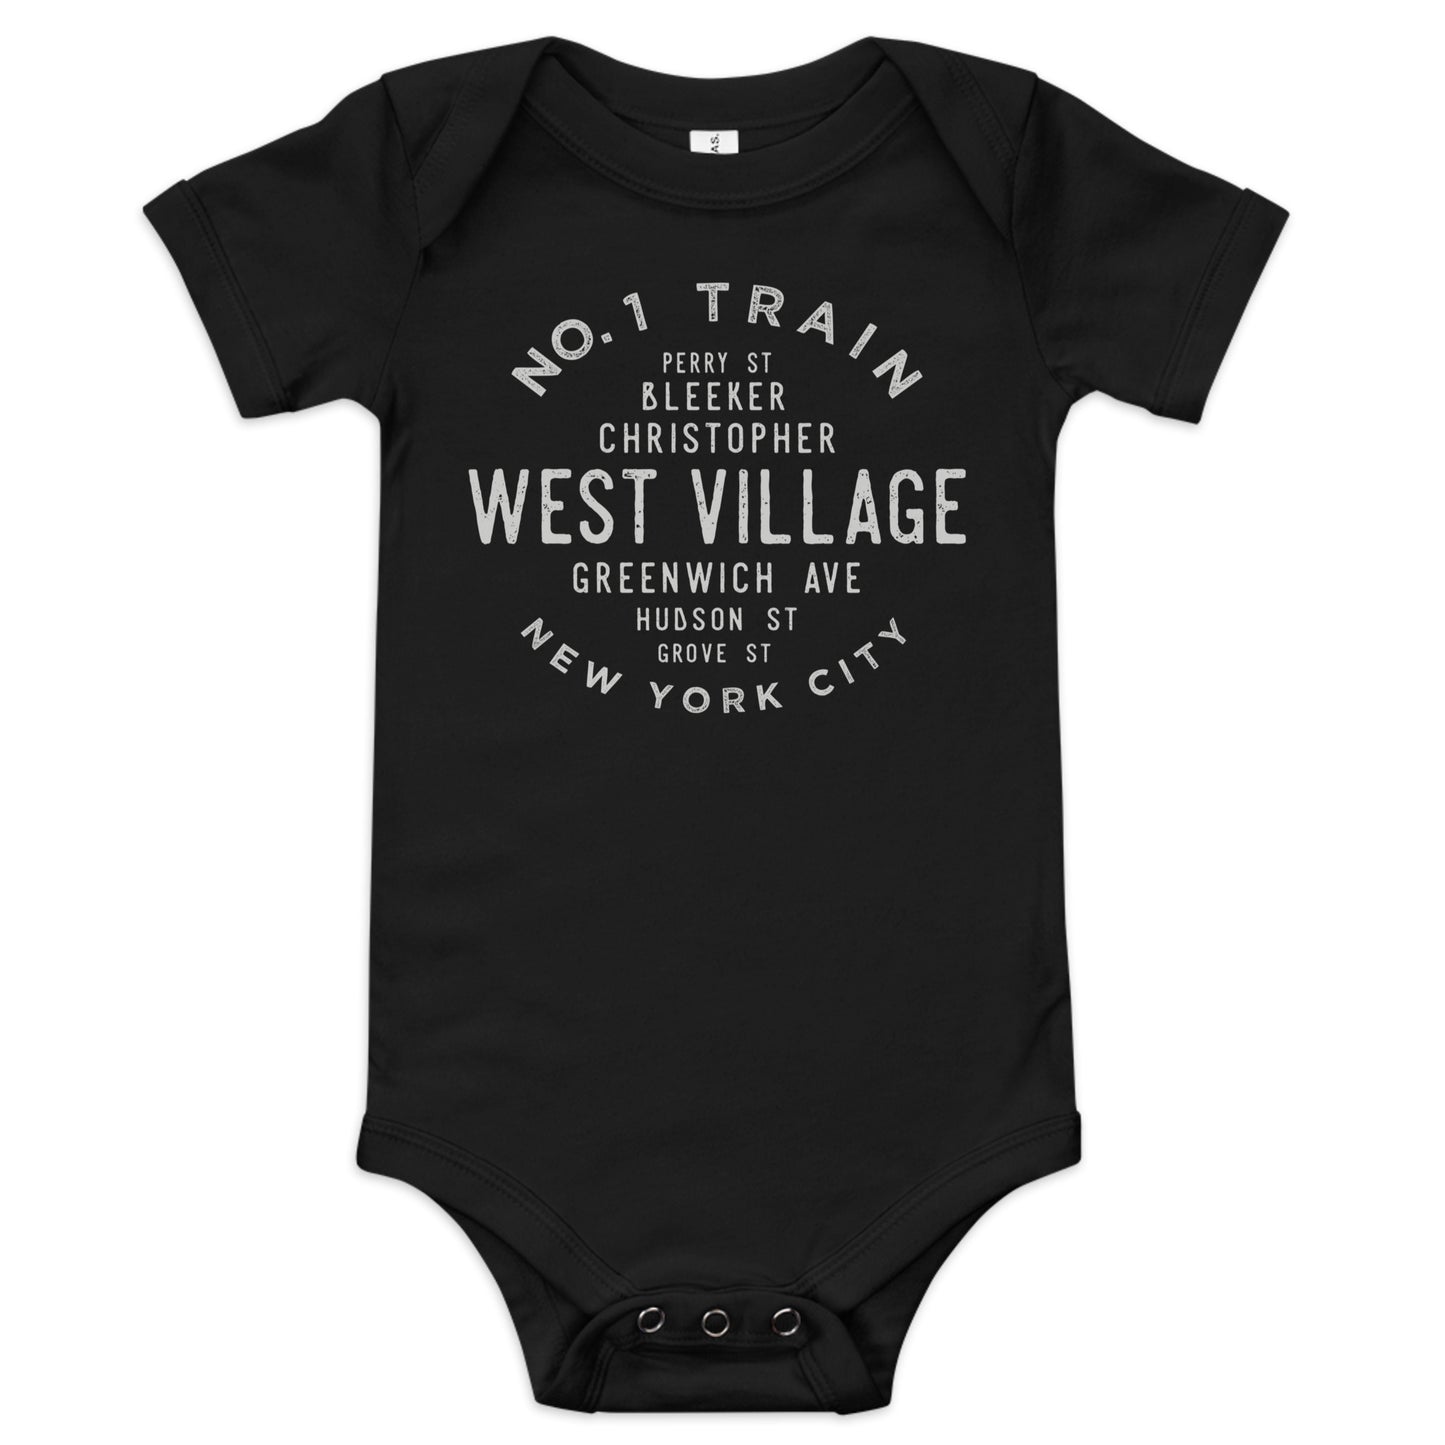 West Village Manhattan NCY Infant Bodysuit